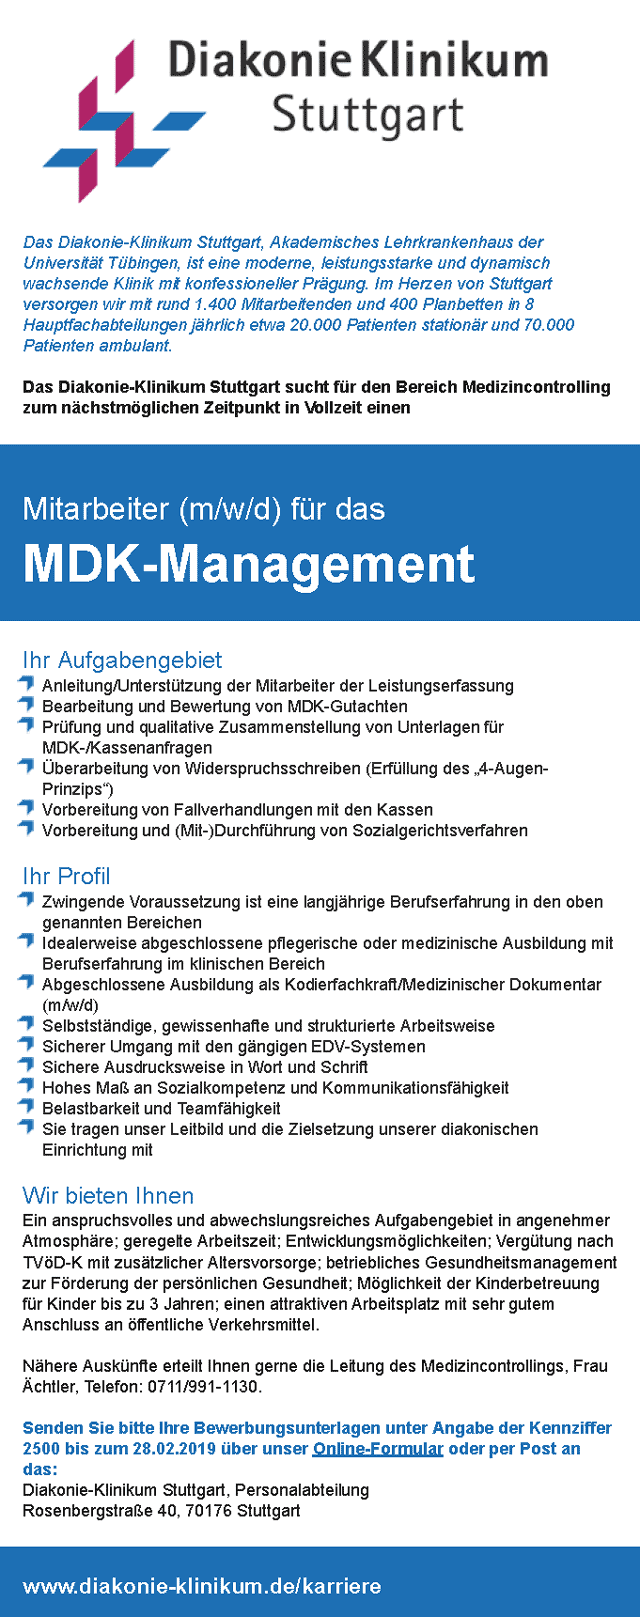 Diakonie-Klinikum Stuttgart: Mitarbeiter MDK-Management (m/w/d)